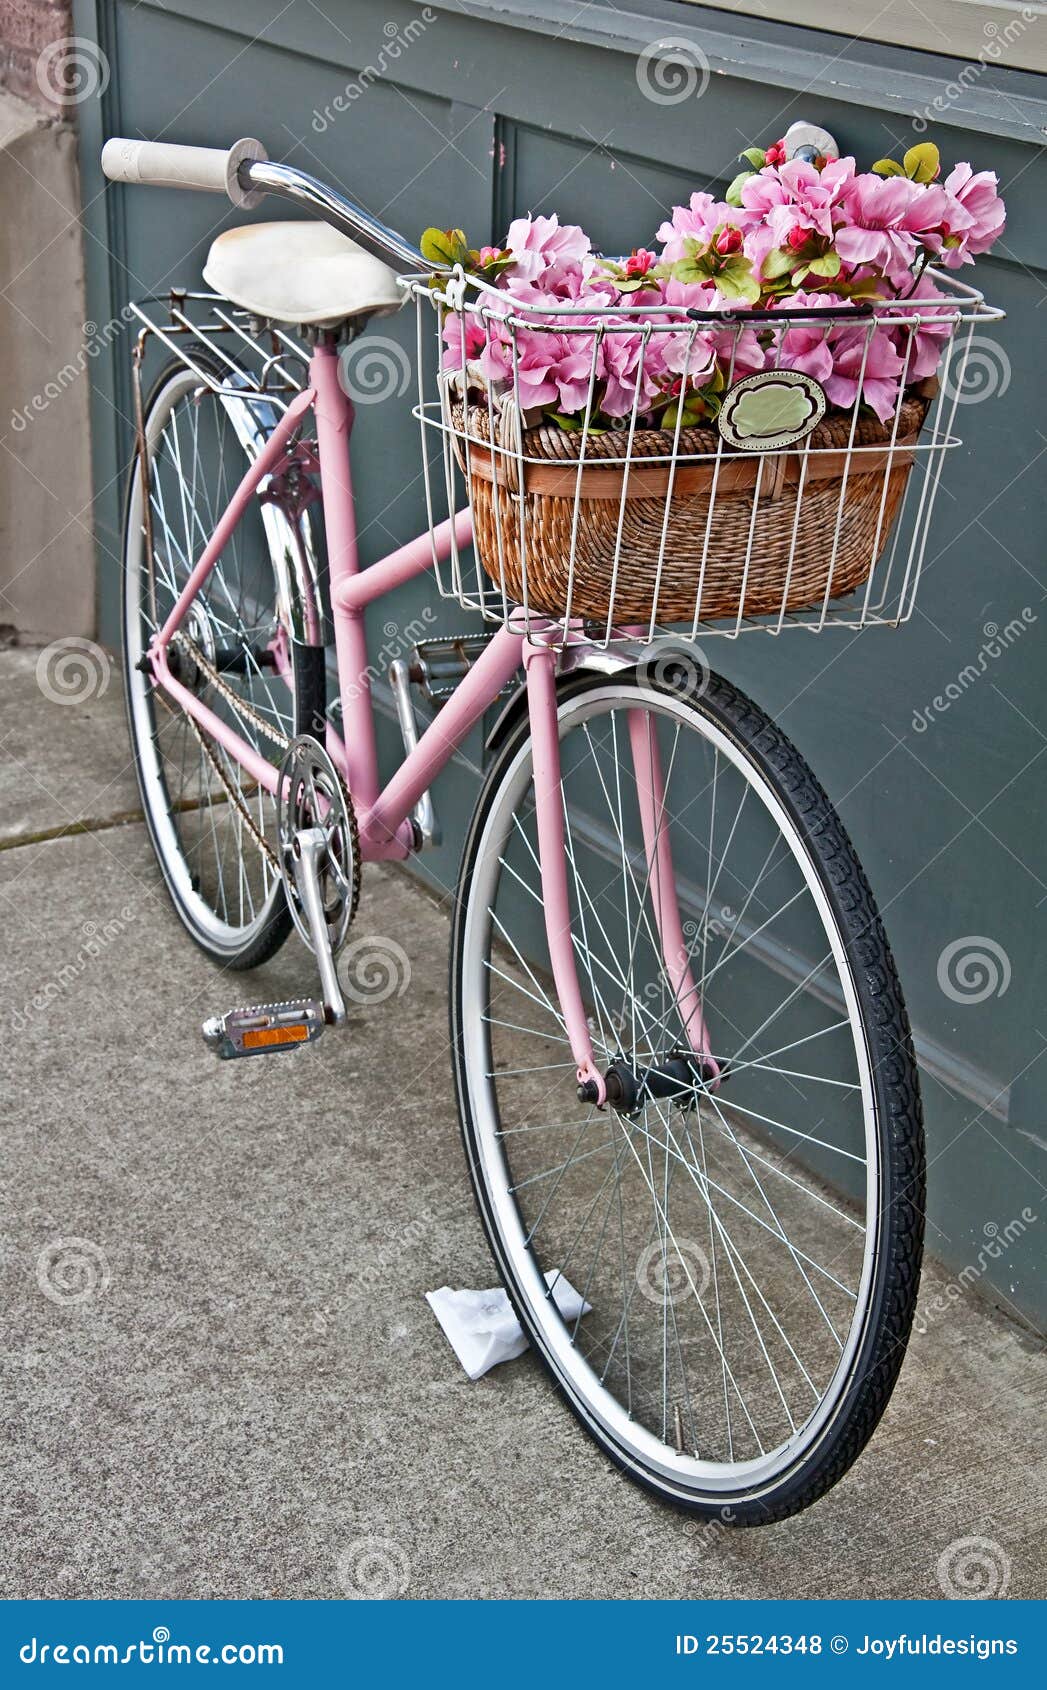 la bicyclette rose societe.com